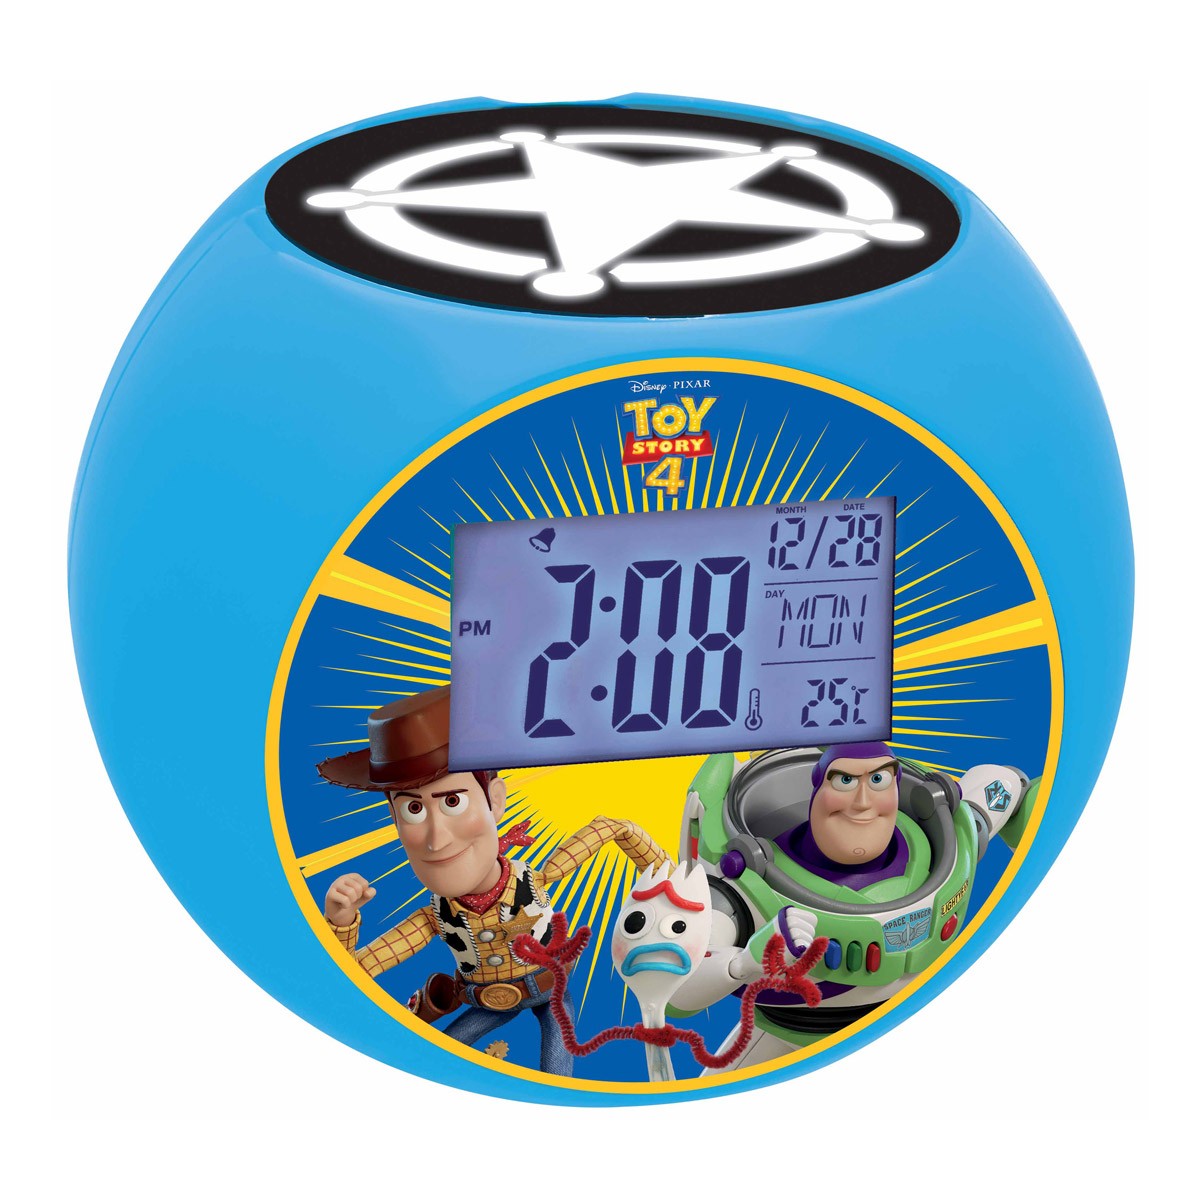 Radiosveglia con proiettore Toy Story 4